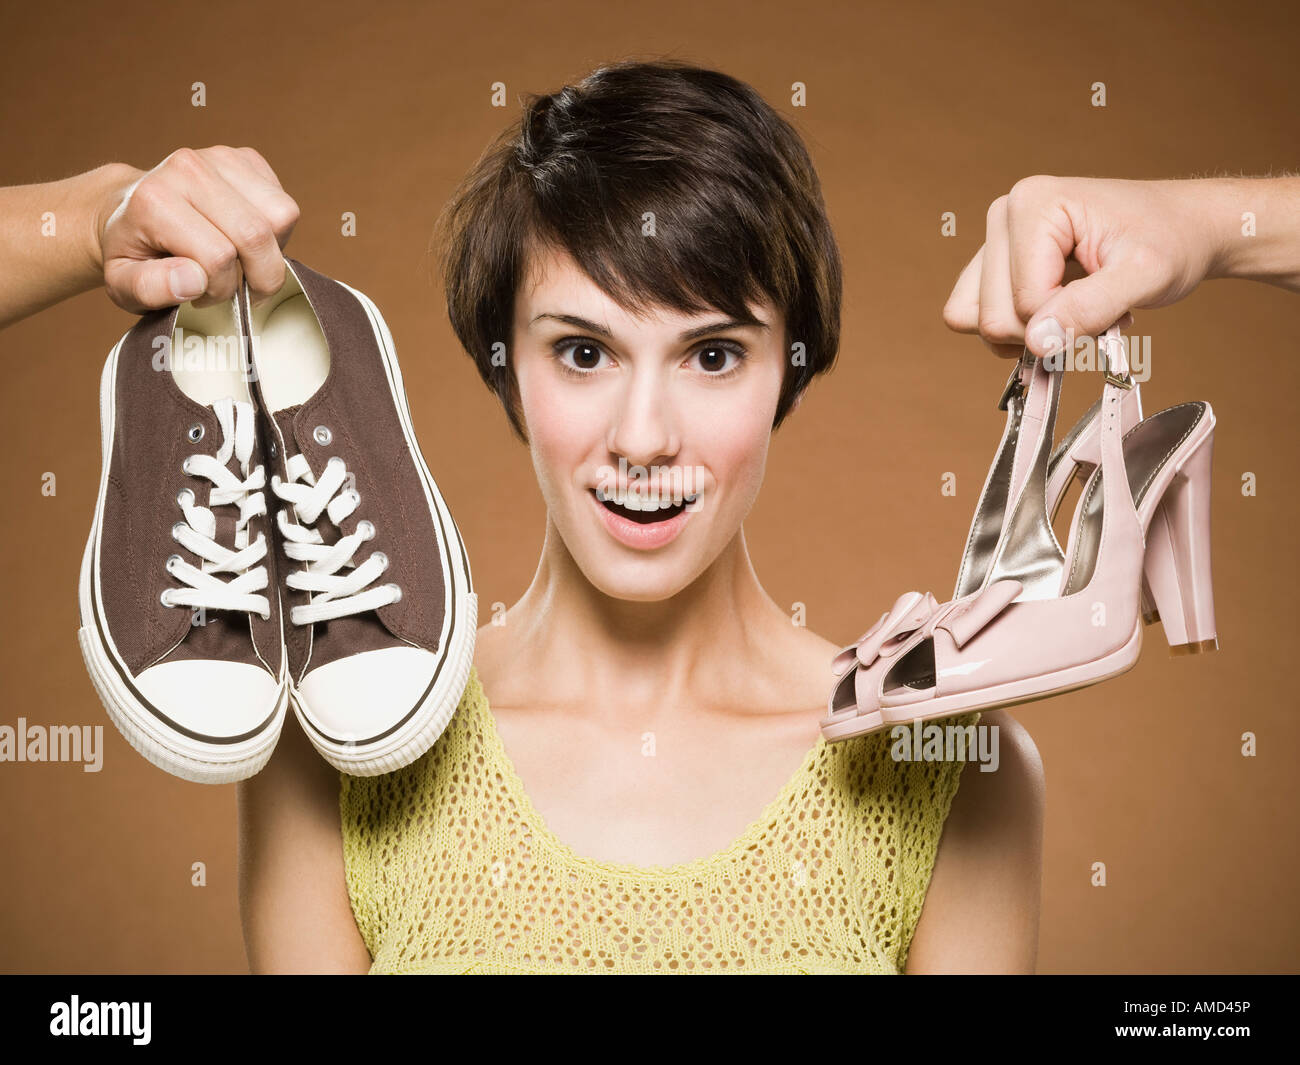 Сильный запах обуви. Фотосессия обуви. Неудобные туфли. Выбор обуви. Ноги в обуви.